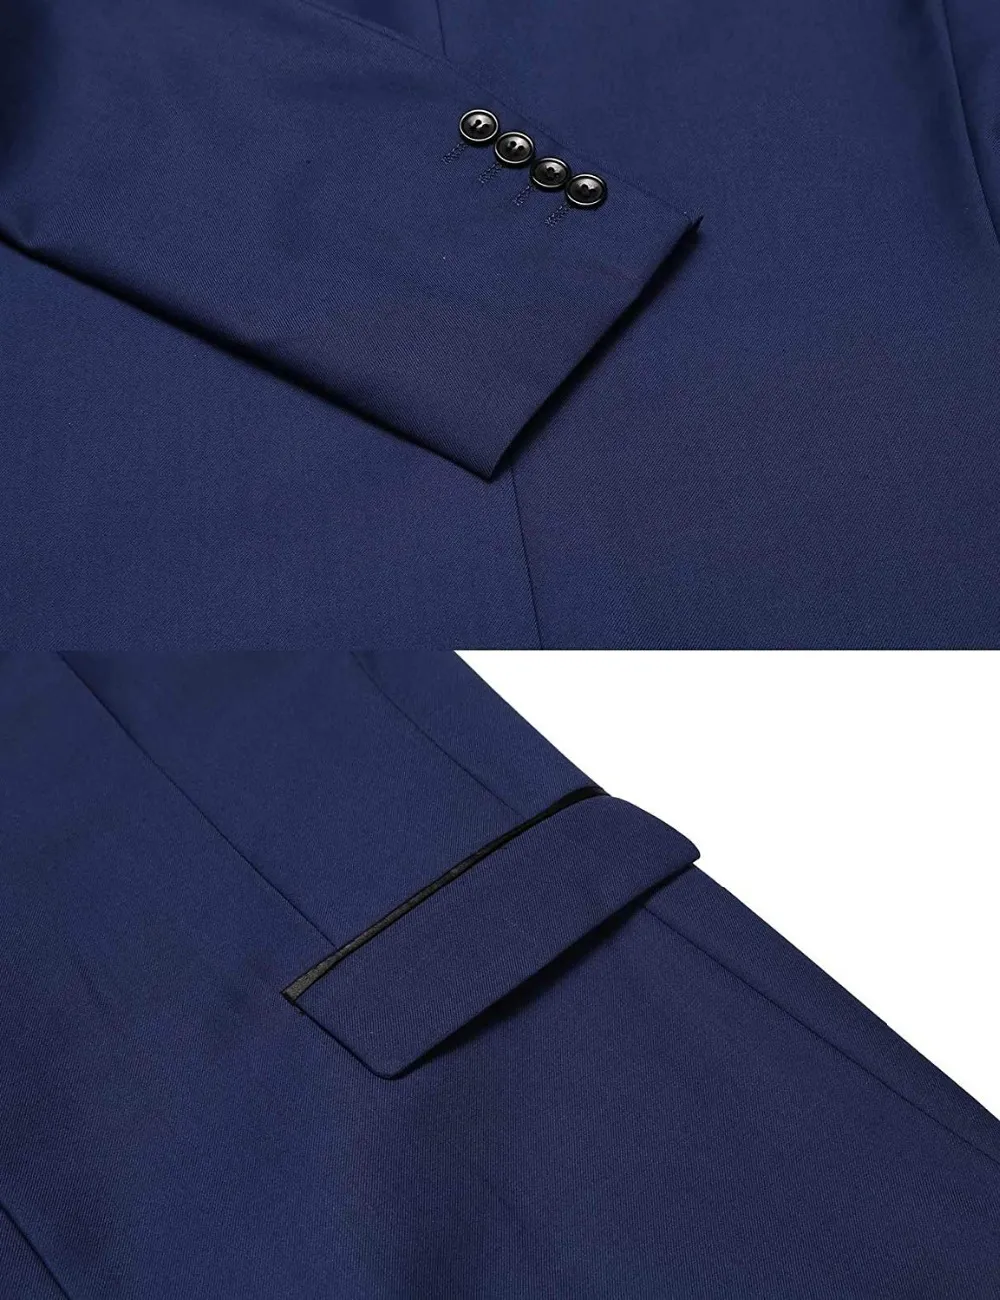 Men-Suits-Navy-Blue-Wedding-Tuxedos-For-Men-Slim-Fit-Mens-Suit-Clothing-Black-Peak-Lapel